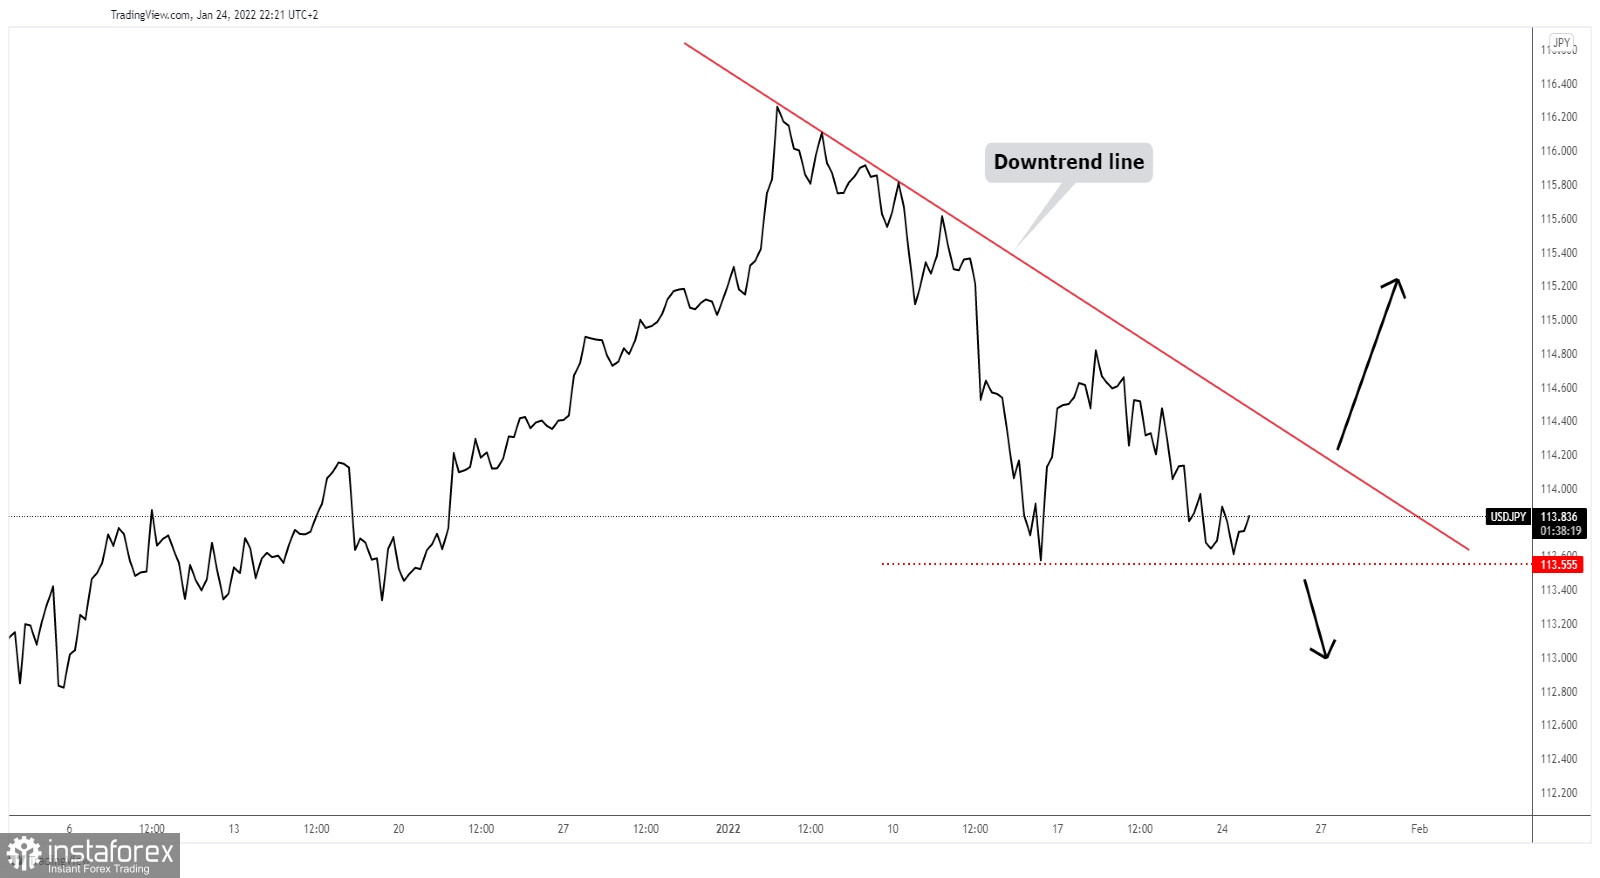 USD/JPY downtrend line retest?